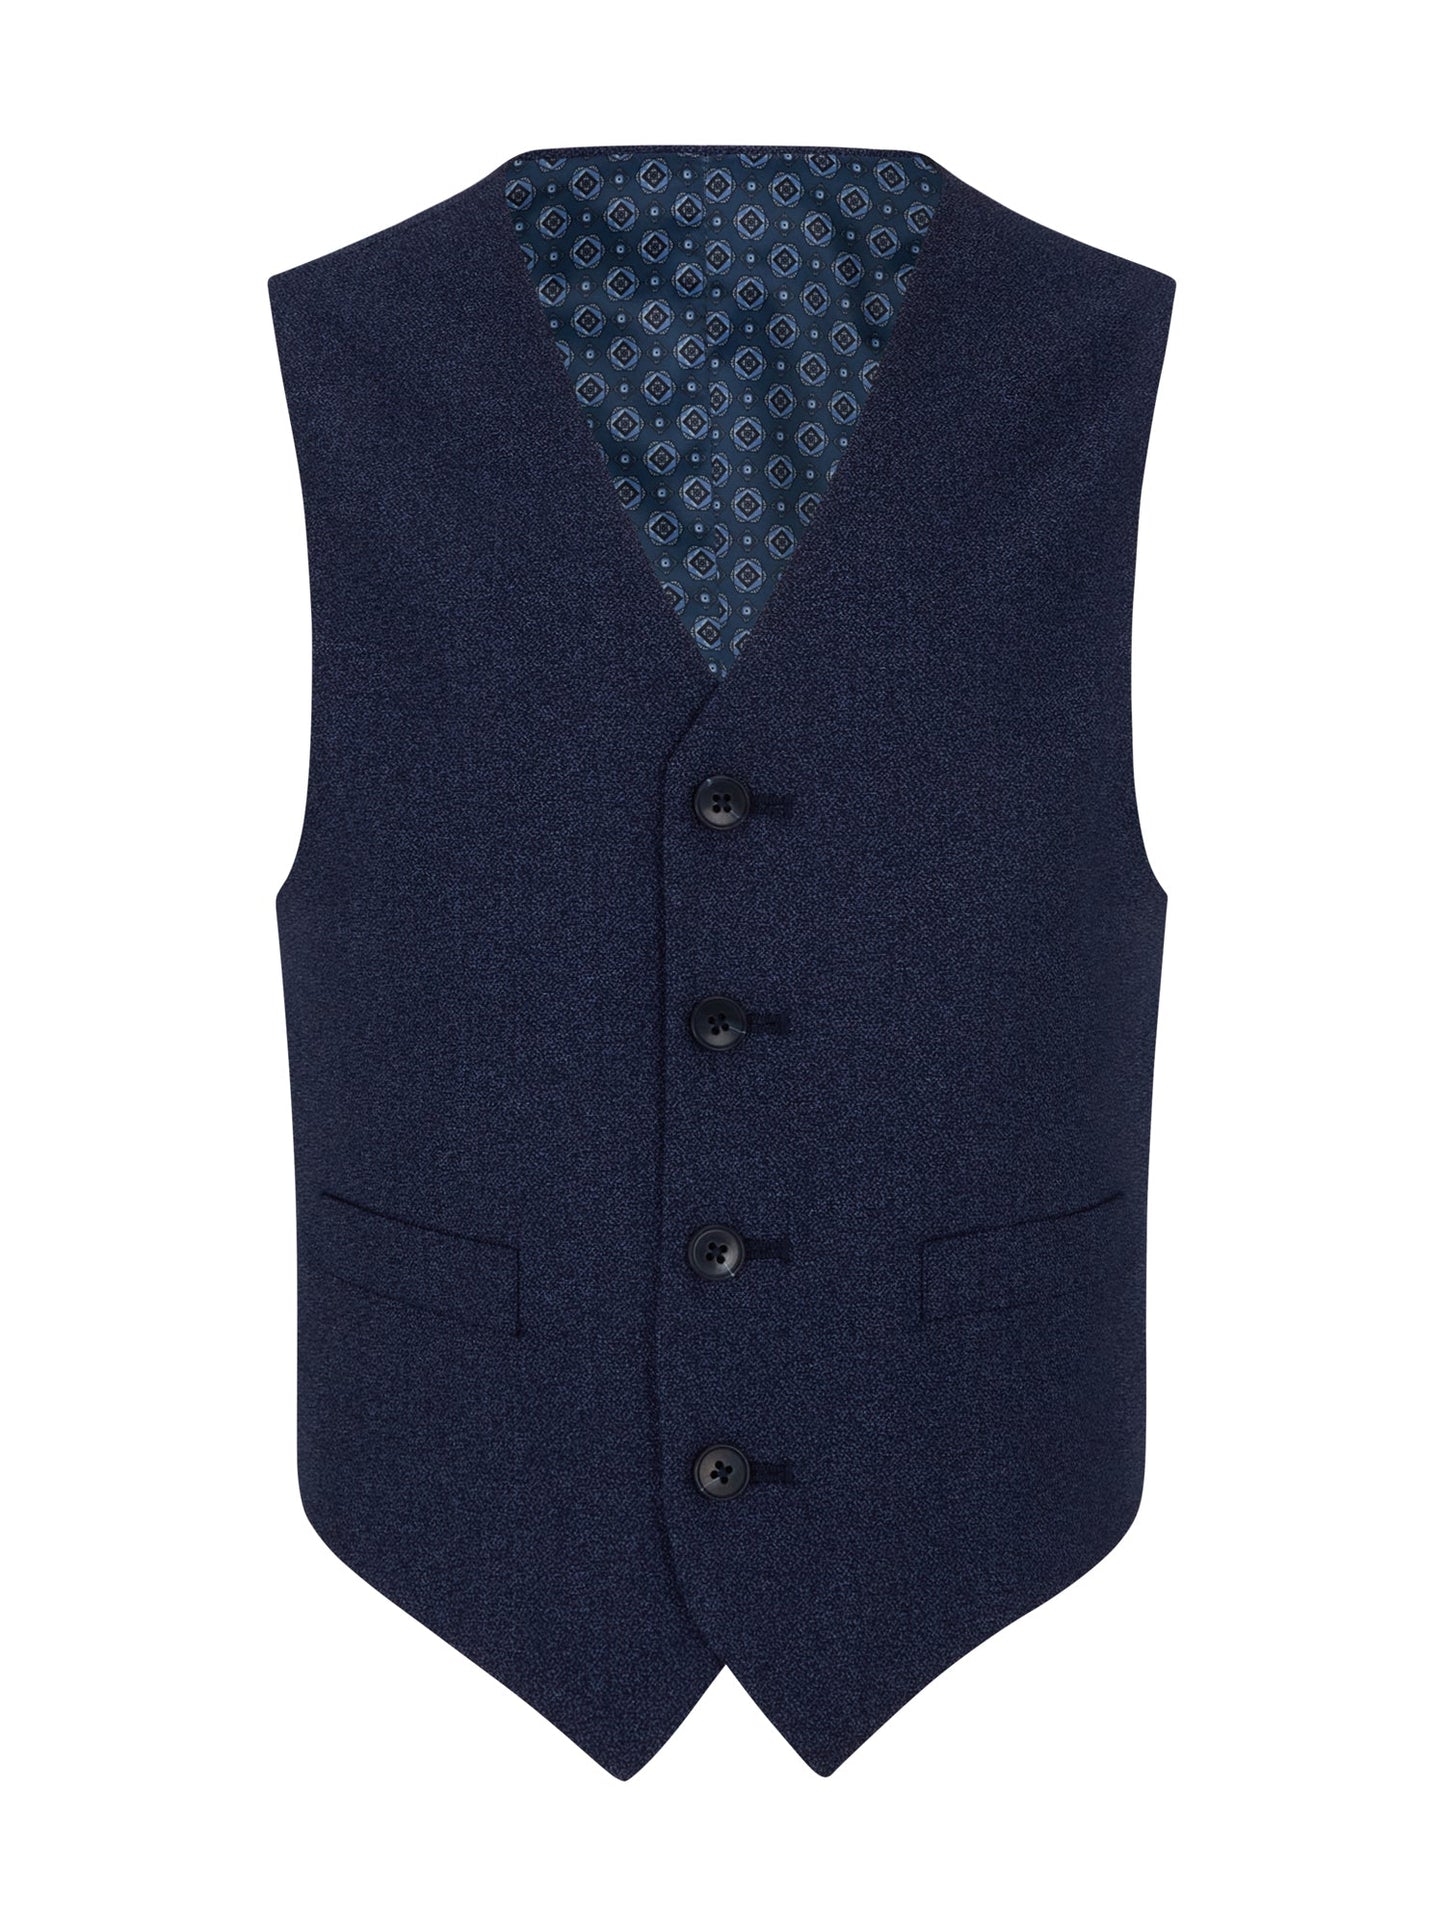 1880 Club Boys Junior Waistcoat - Doyle 55120 - Matt O'Brien Fashions